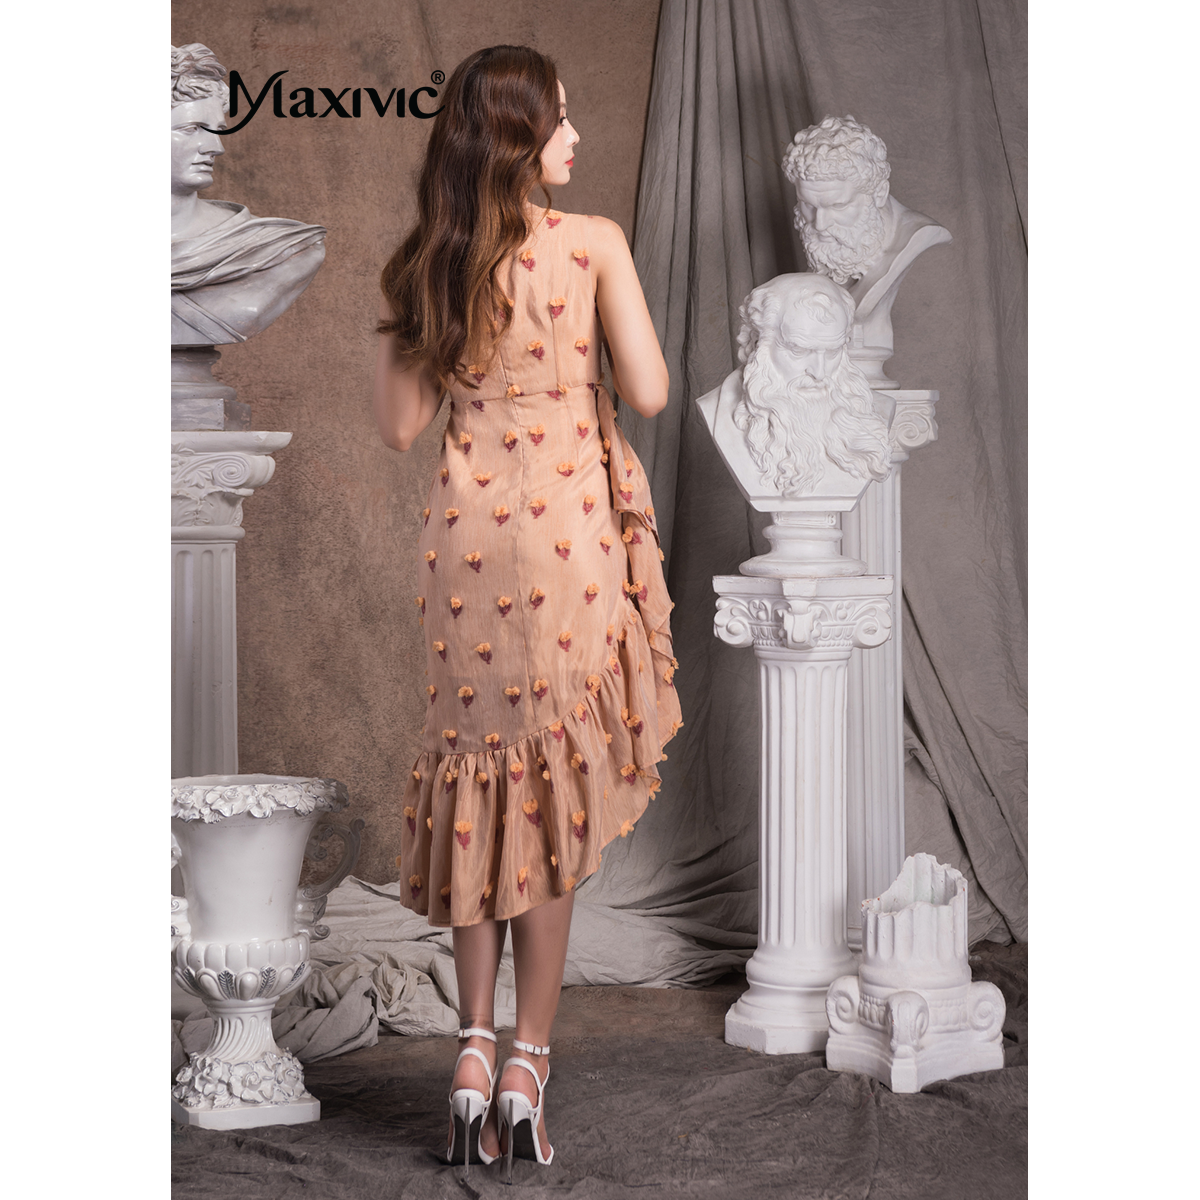 Đầm Voan Strawberry Clump Tùng Bèo Xoắn Eo Maxivic M012317